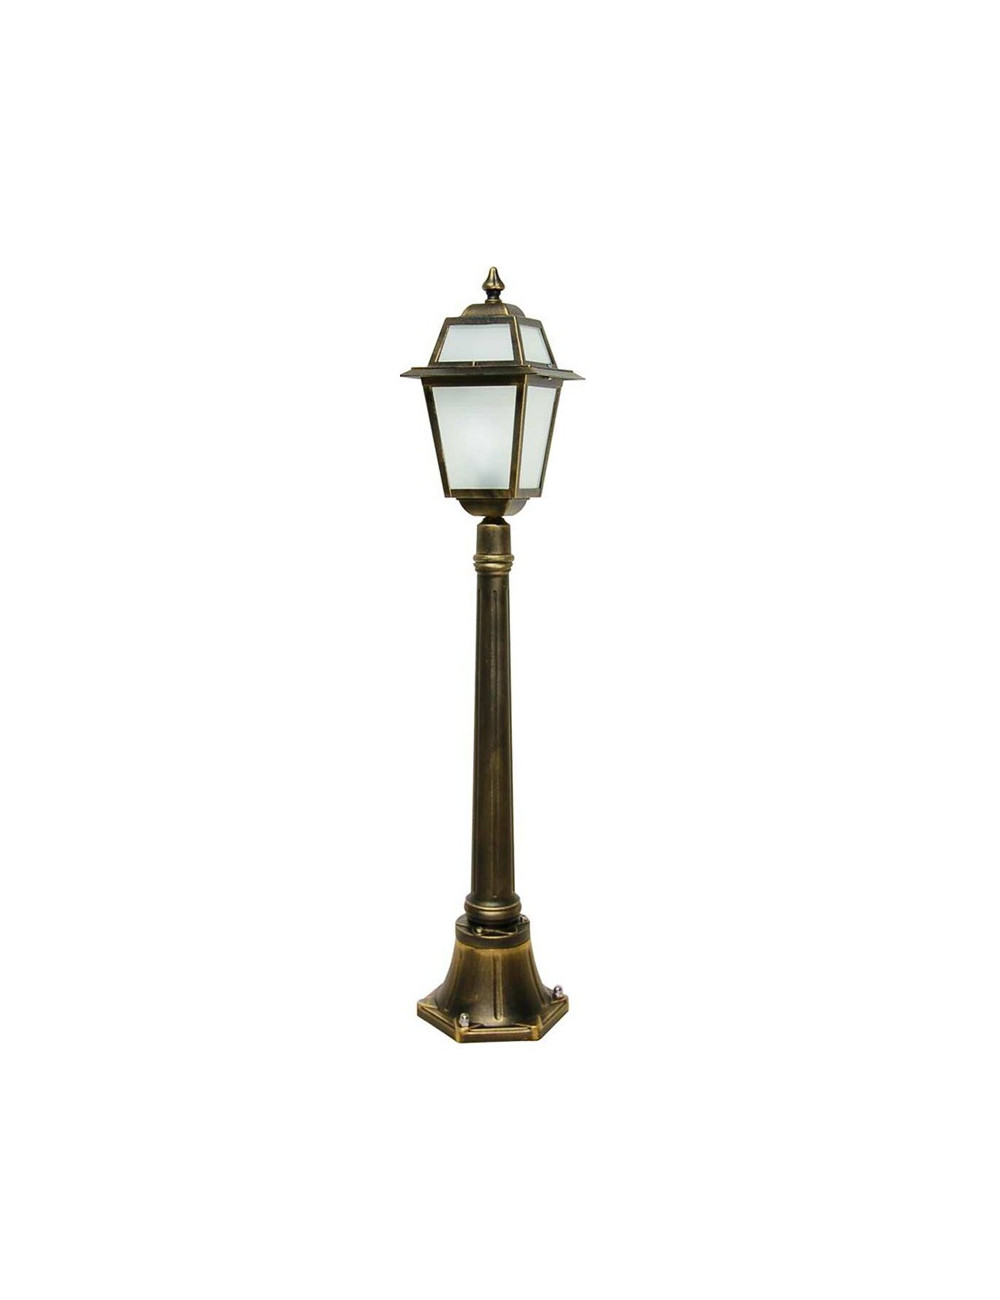 ARTEMIDE Paletto Lampione Lanterna Classica Illuminazione Esterno Giardino